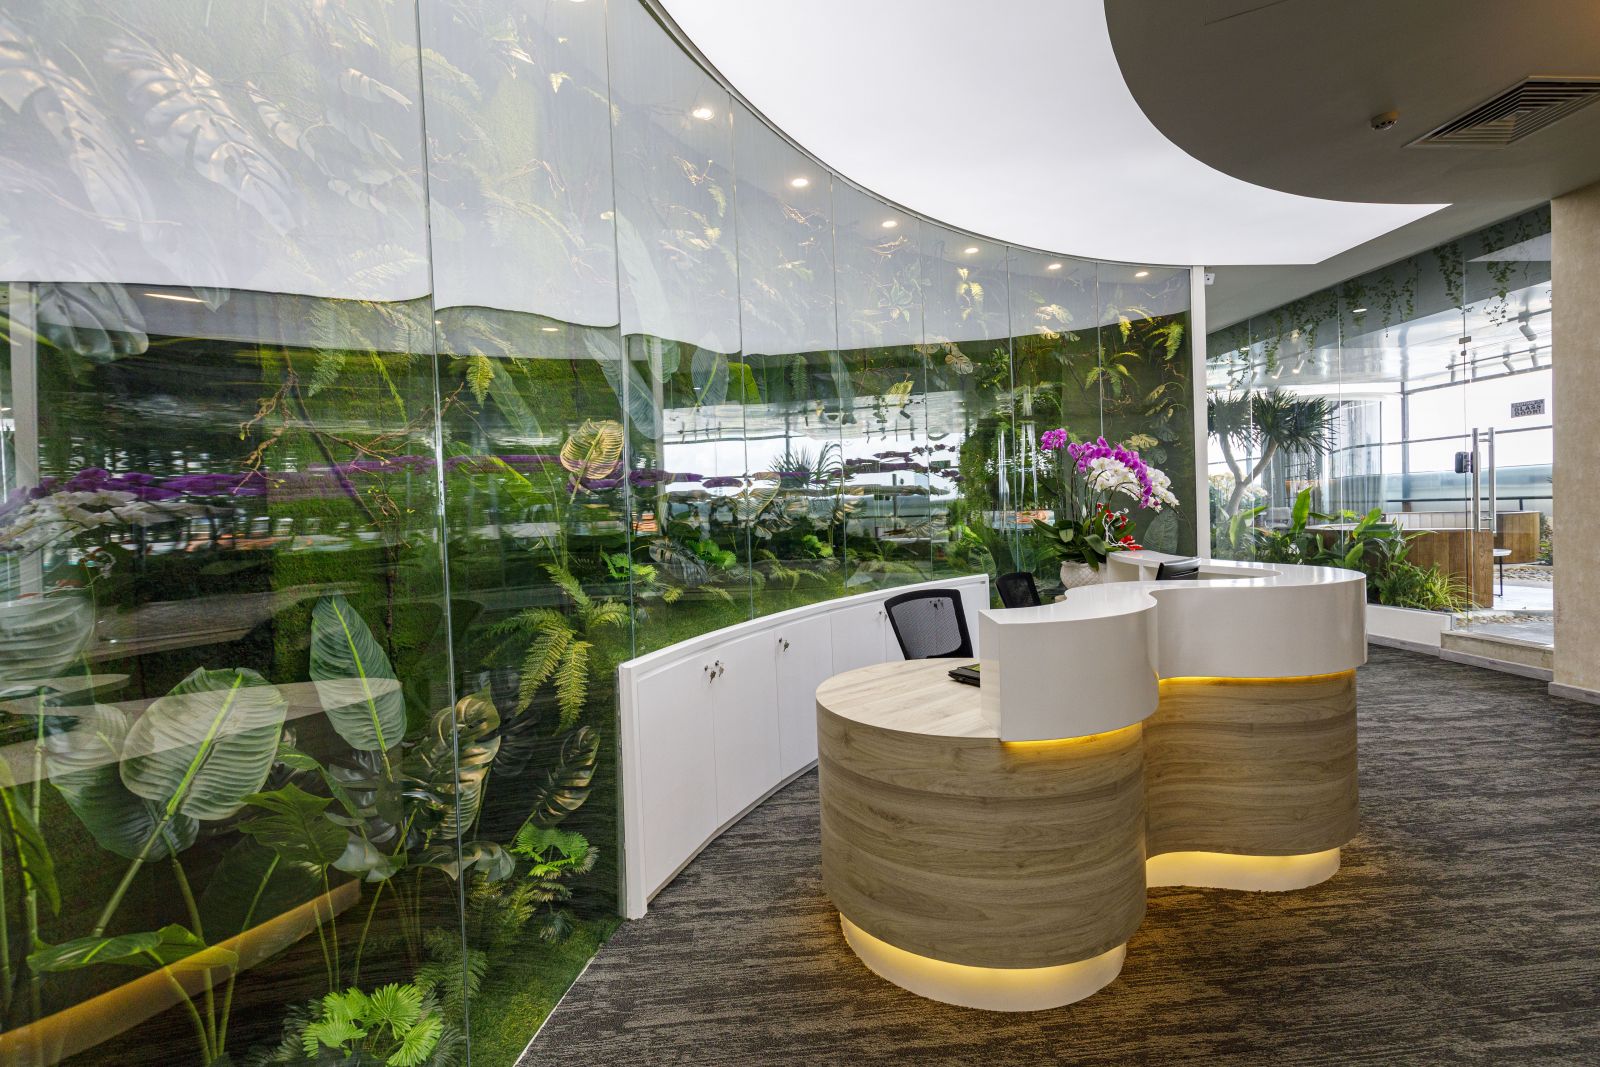 Thiết kế không gian văn phòng kết hợp thiên nhiên và cây xanh